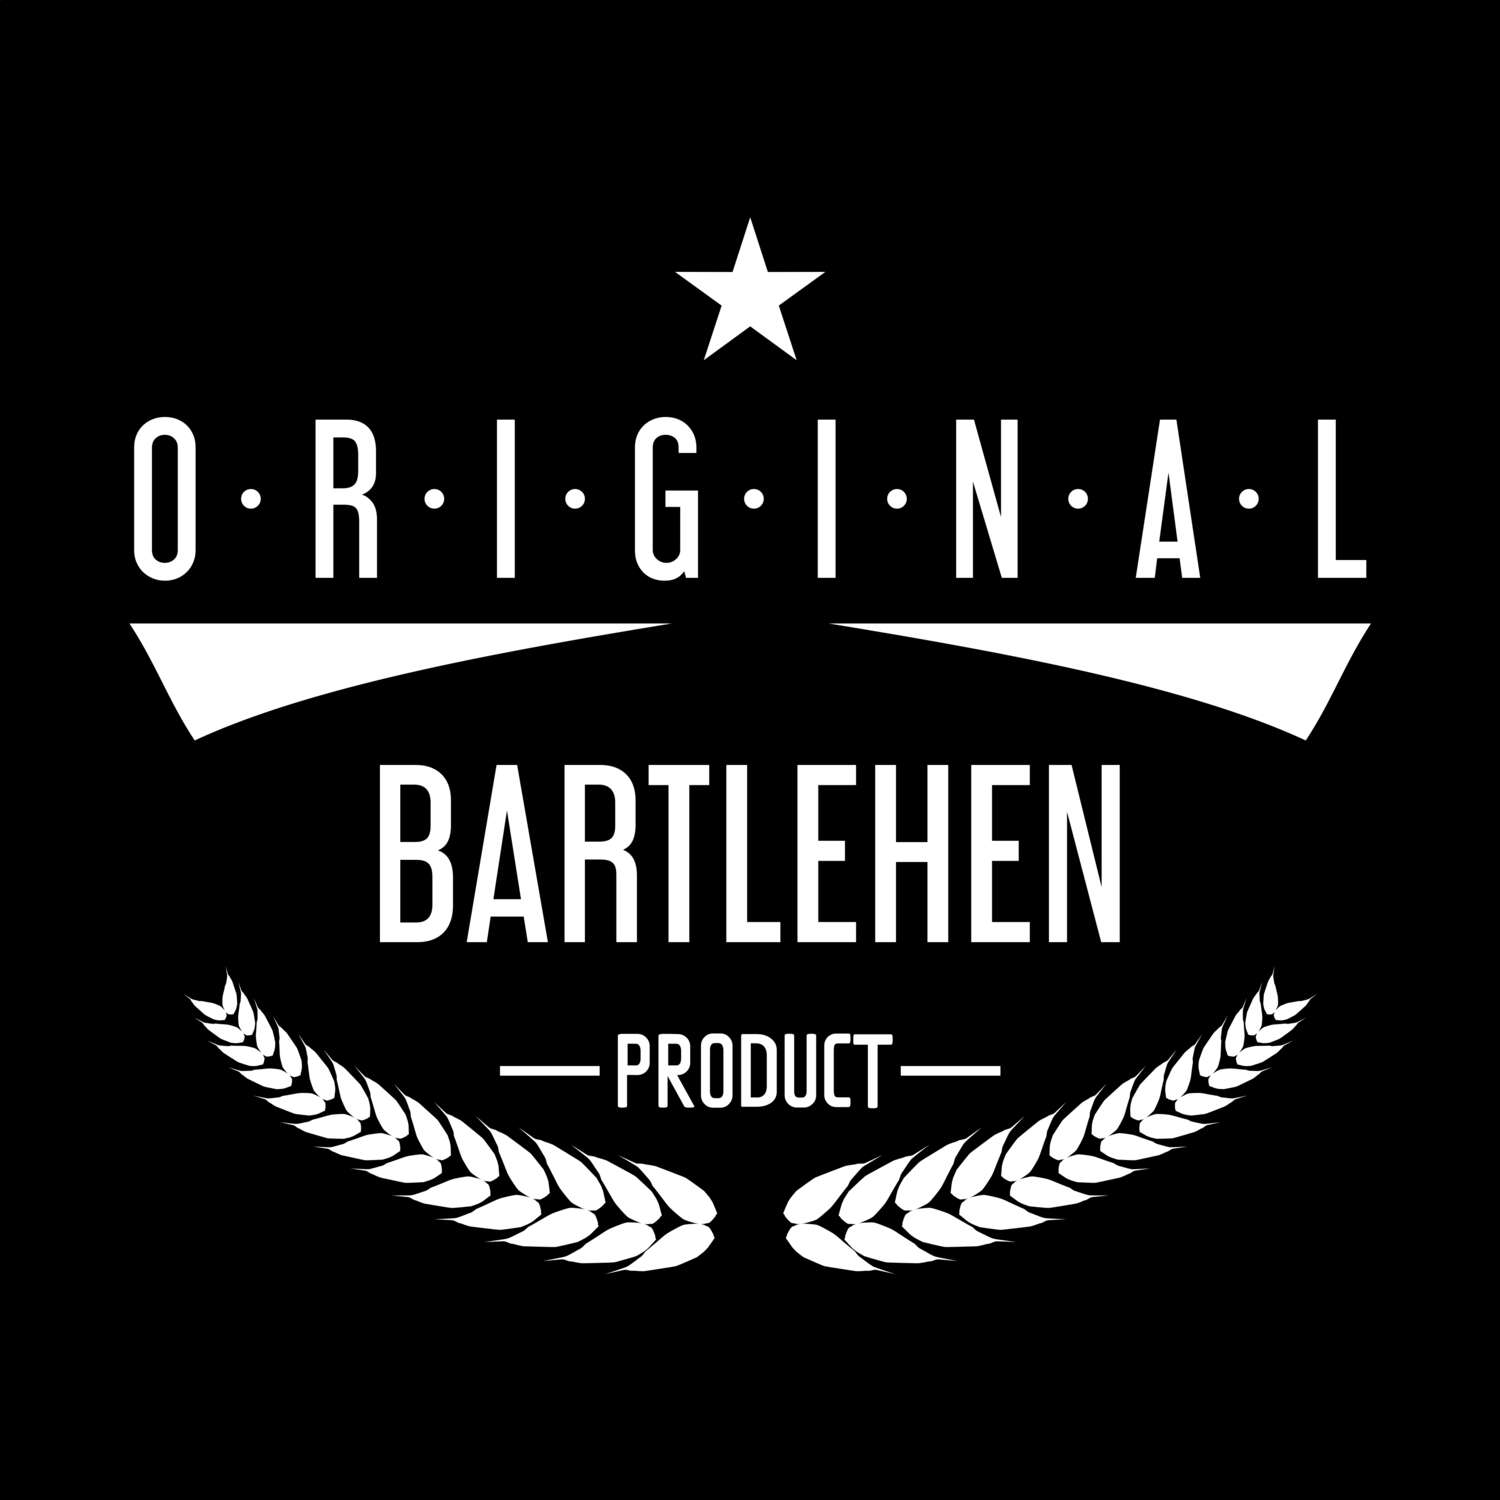 Bartlehen T-Shirt »Original Product«